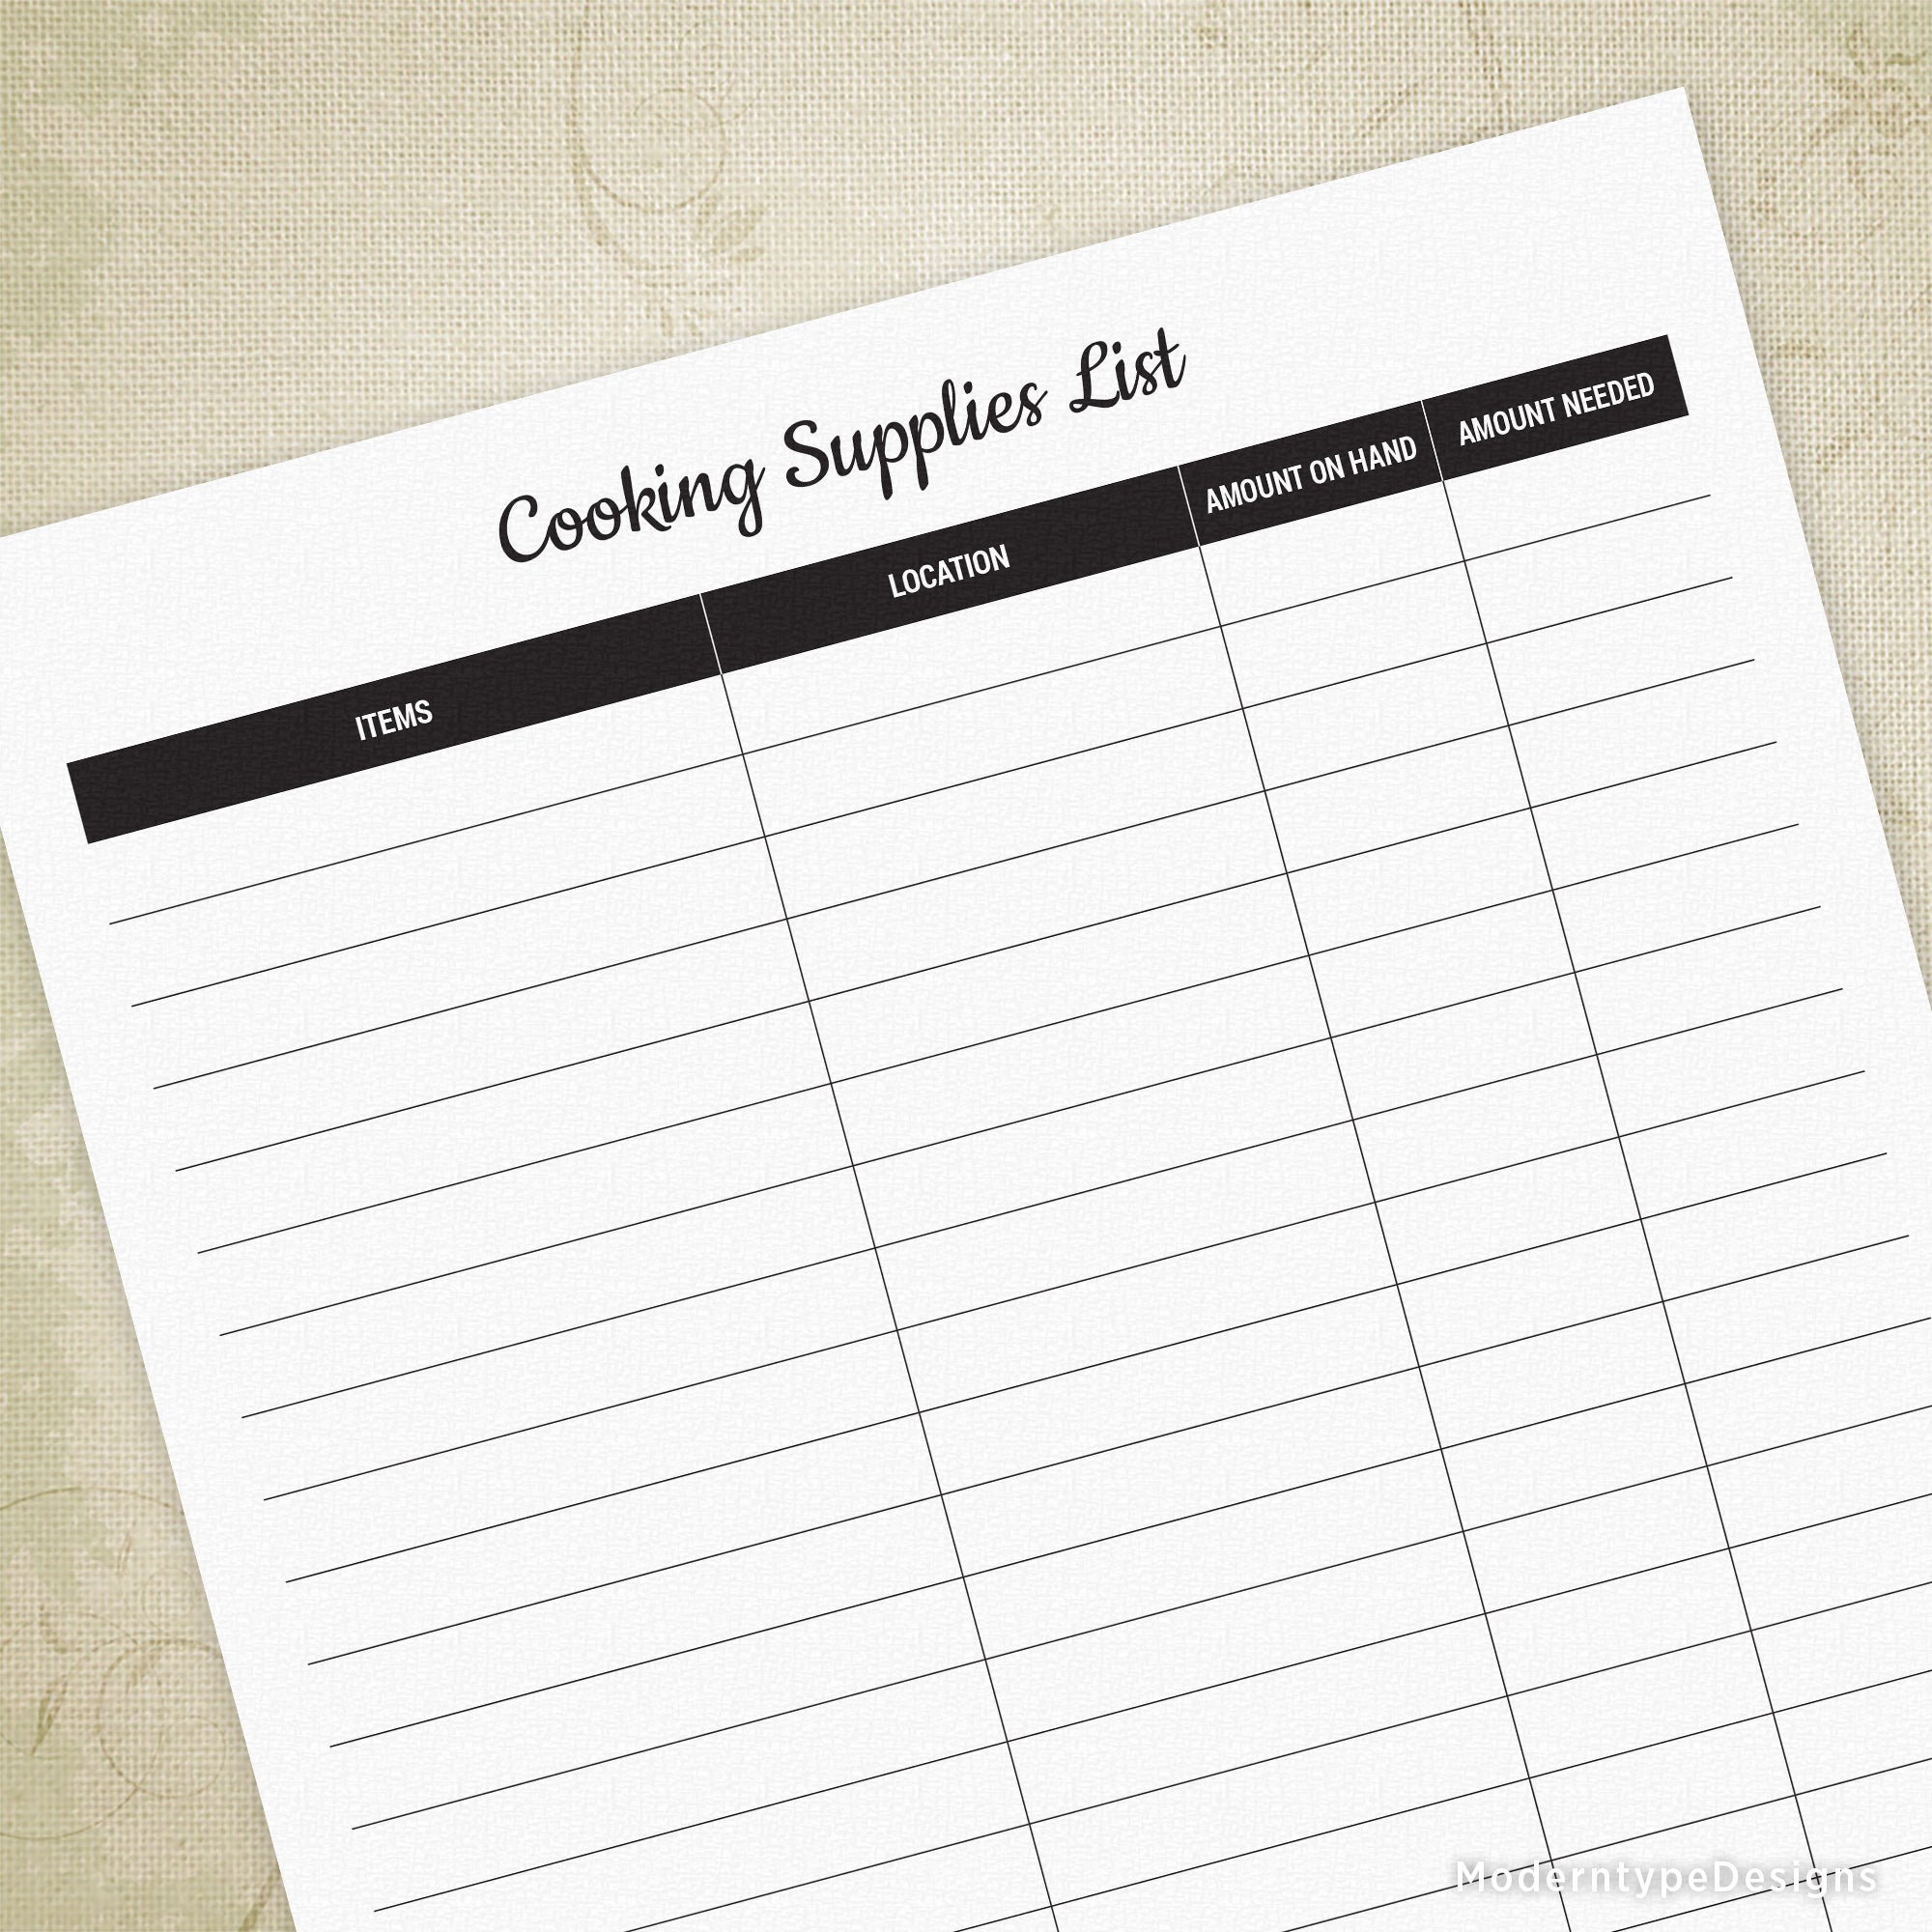 Kitchen Essentials Printable Checklist, Kitchen Inventory, Kitchen